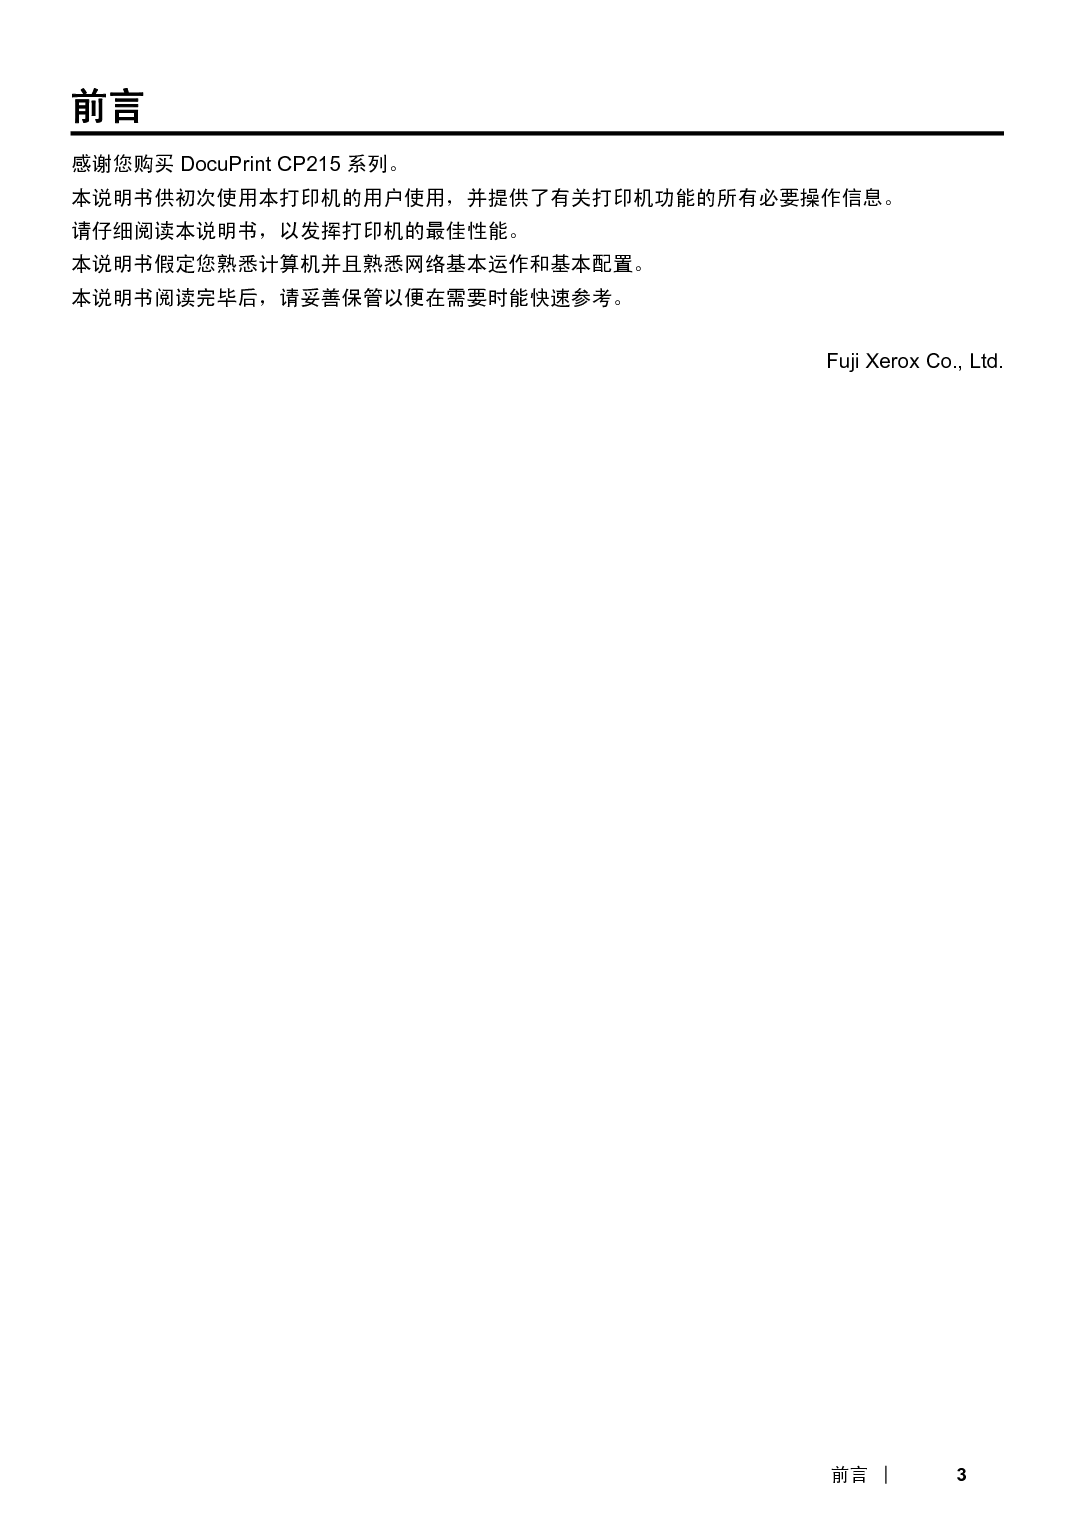 富士施乐 Fuji Xerox DocuPrint CP215 使用说明书 第2页